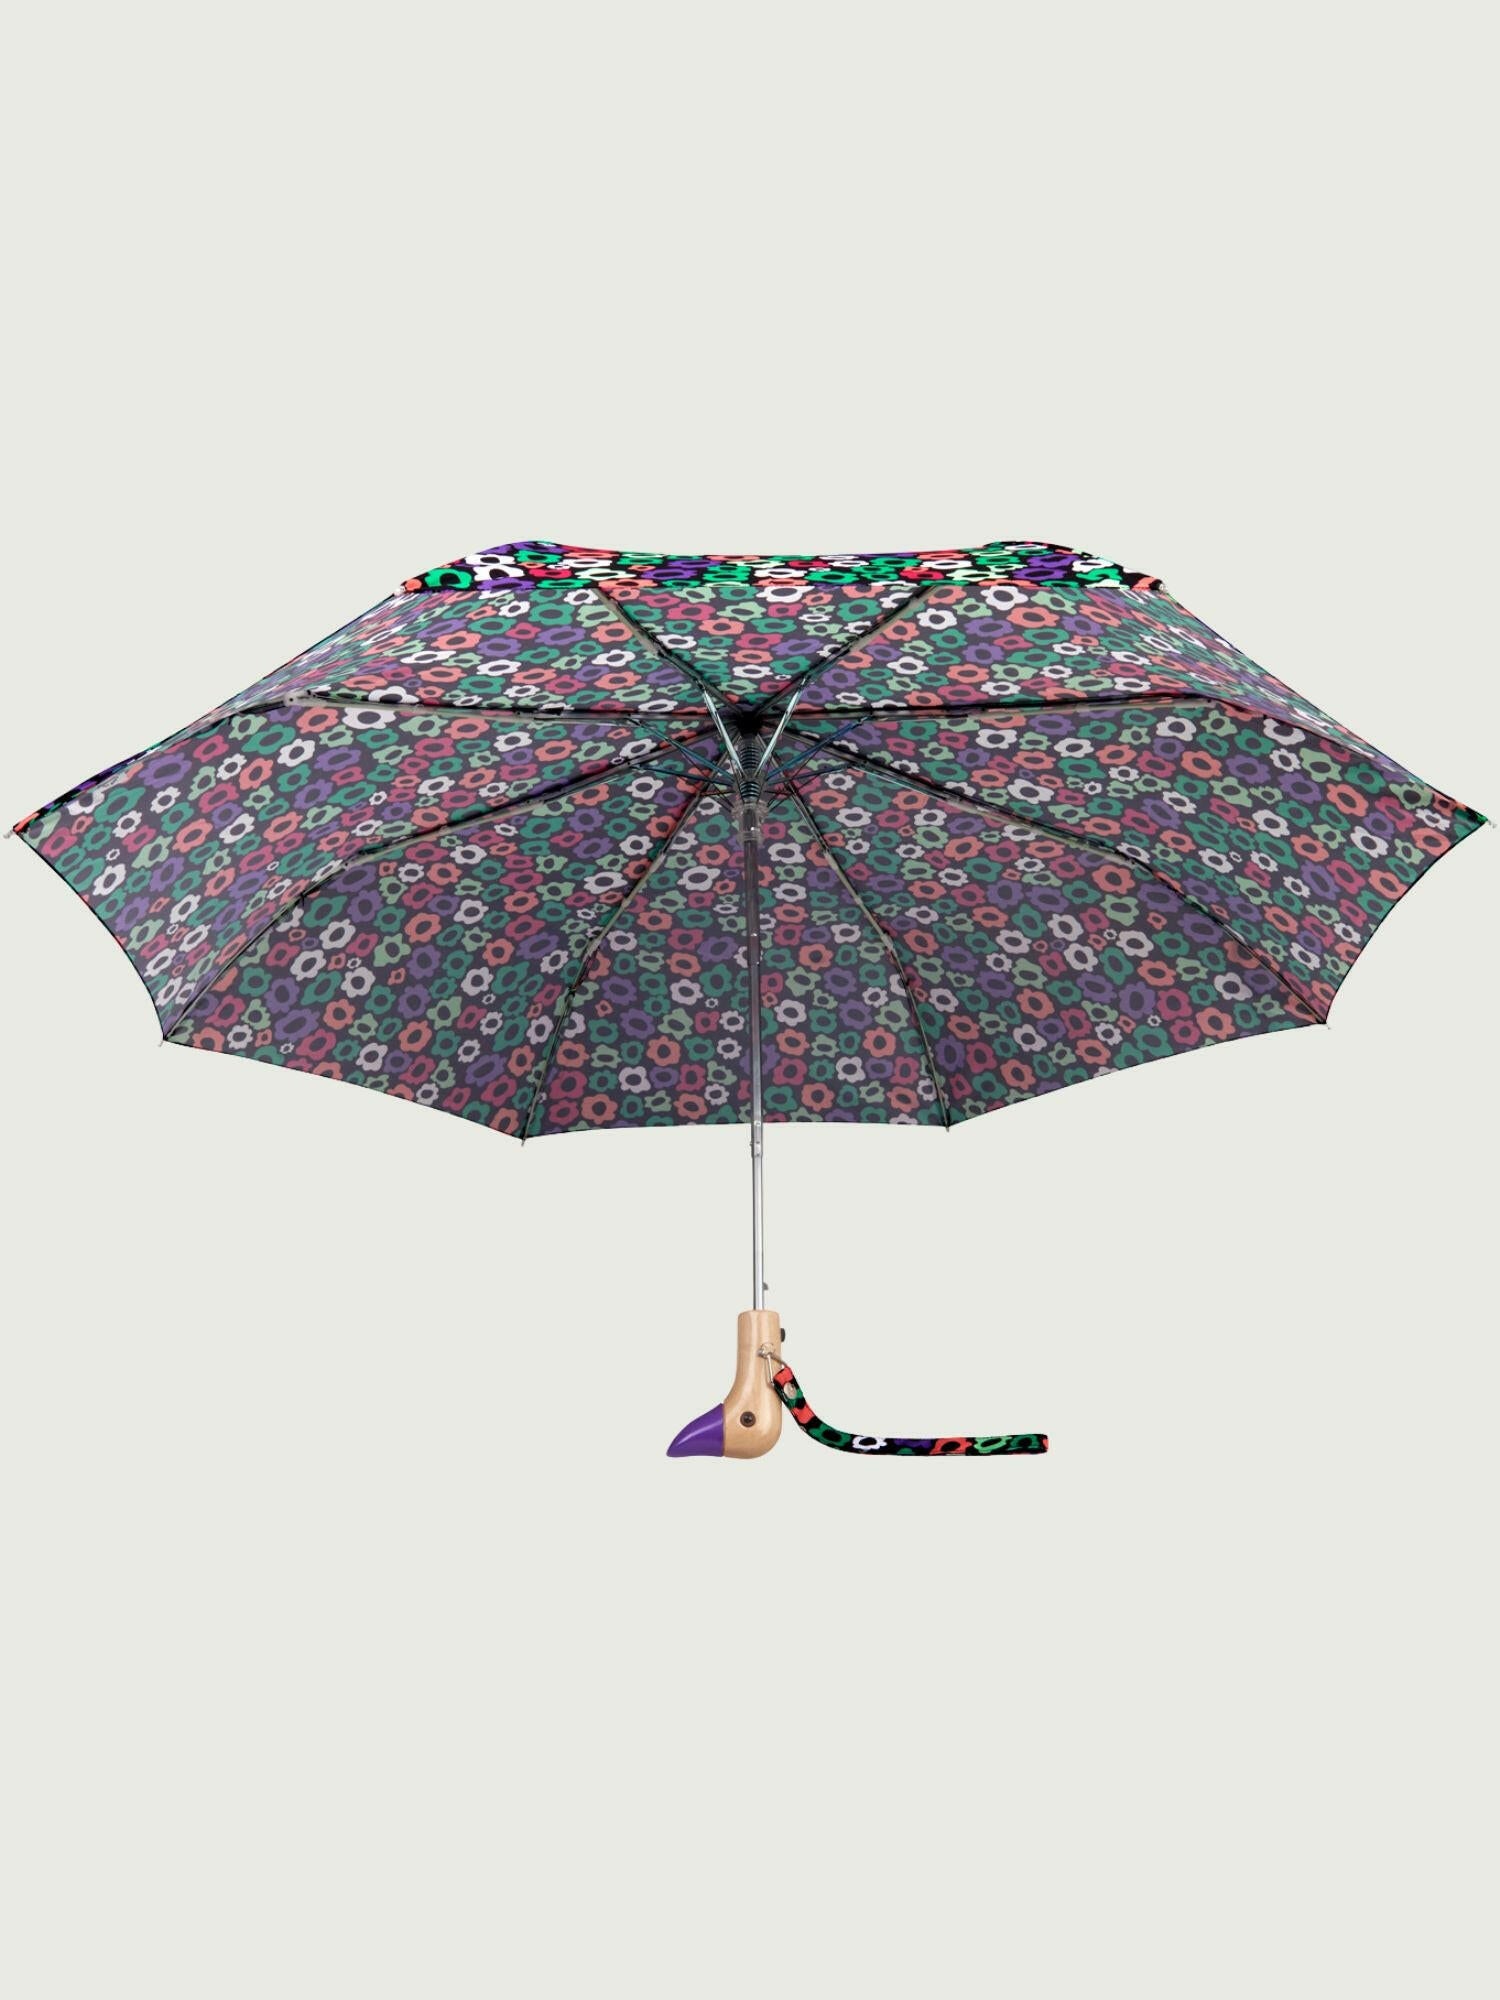 Flower Maze Eco-Friendly Umbrella.